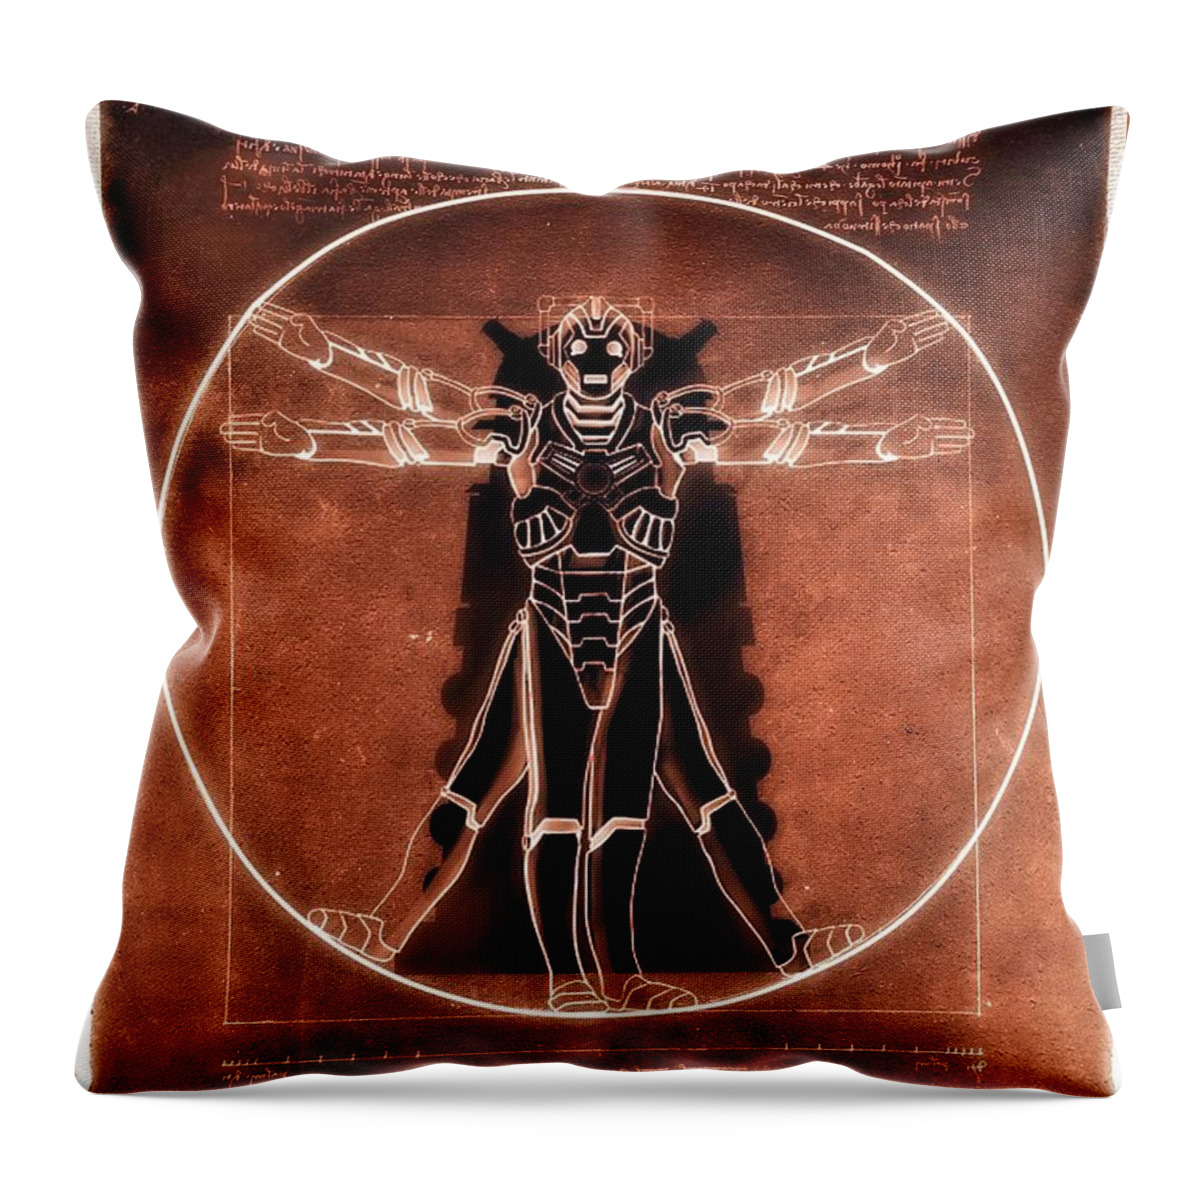 Cyberman Throw Pillow featuring the digital art Vitruvian Cyberman on Mars by HELGE Art Gallery